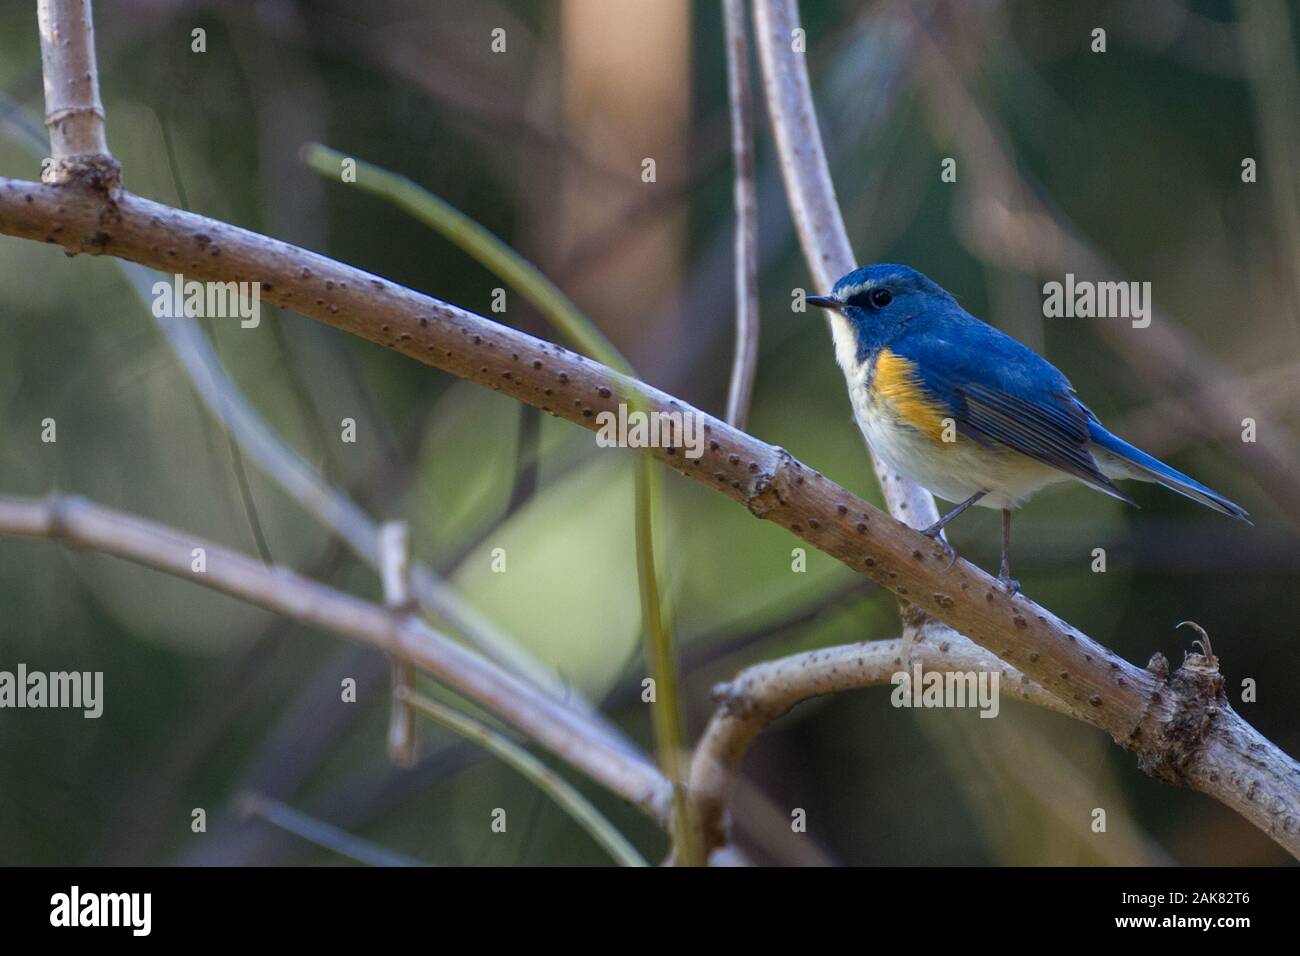 Un pájaro de cola azul flanqueado por el rojo, akso conocido como un arbusto-robin flanqueado por el naranja (Tarsiger cyanurus) encaramado en ramitas en el parque Izumi no Mori, Yamato, Kanagawa, Japón Foto de stock